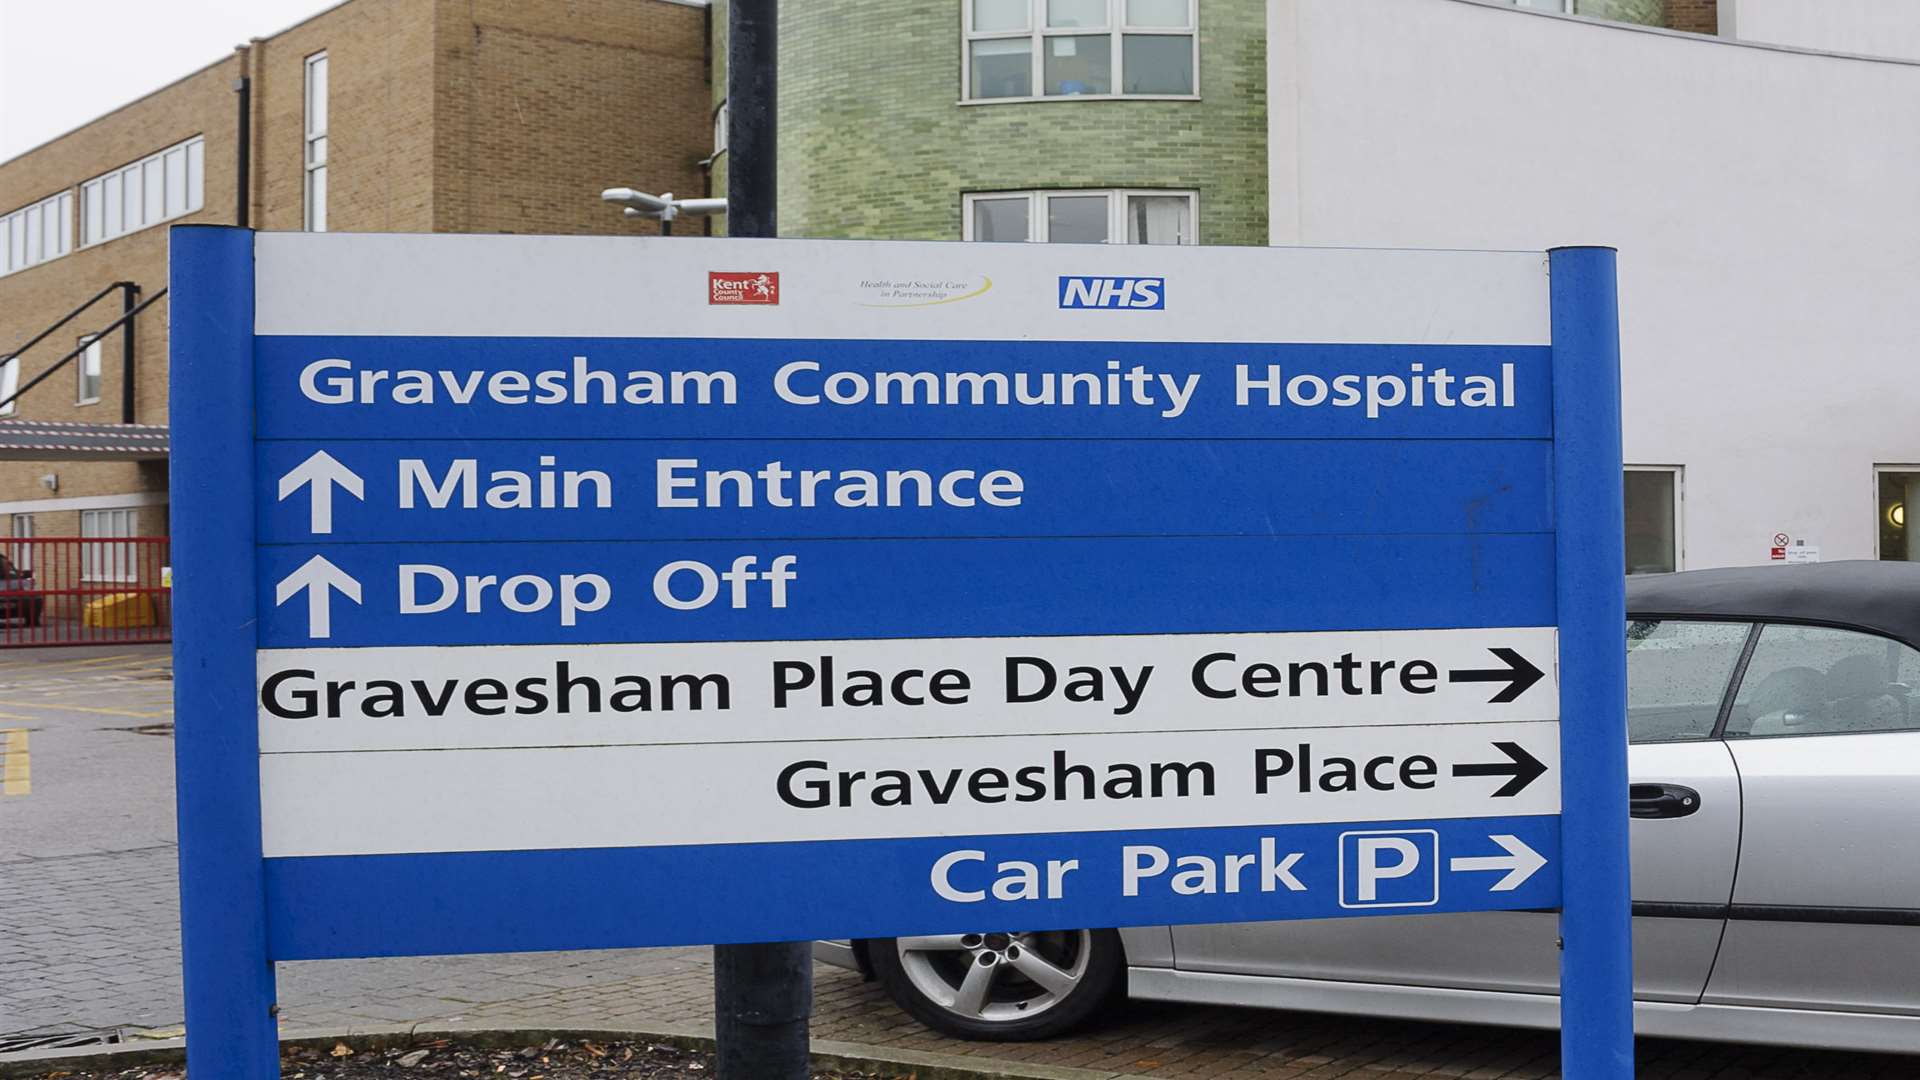 Gravesham Community Hospital, Bath Street, Gravesend